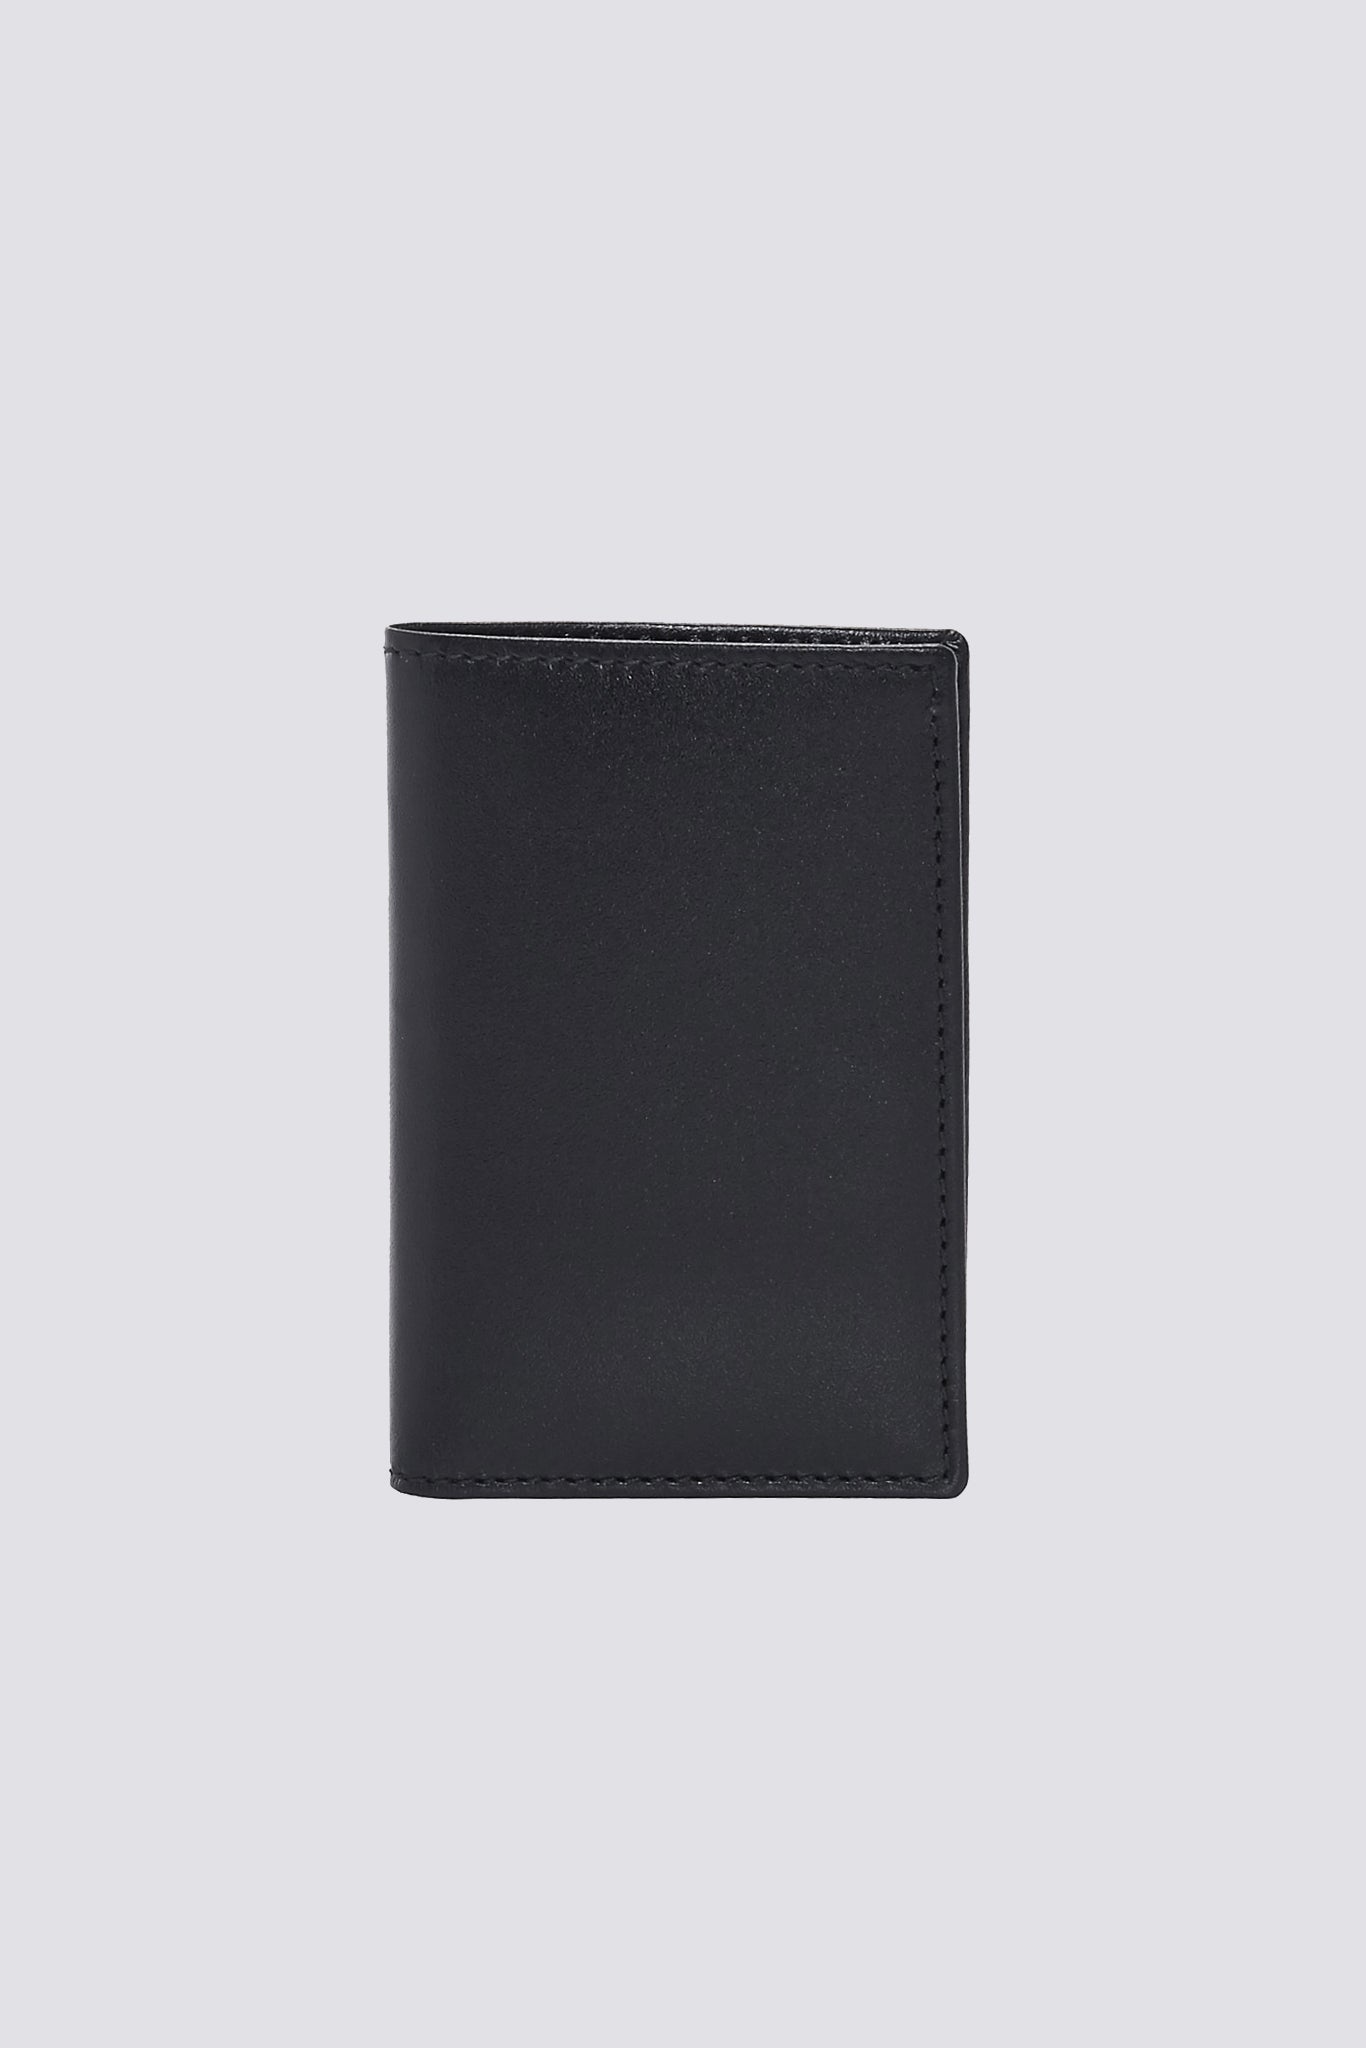 Leather Bi-Fold Wallet - Black - SA6400